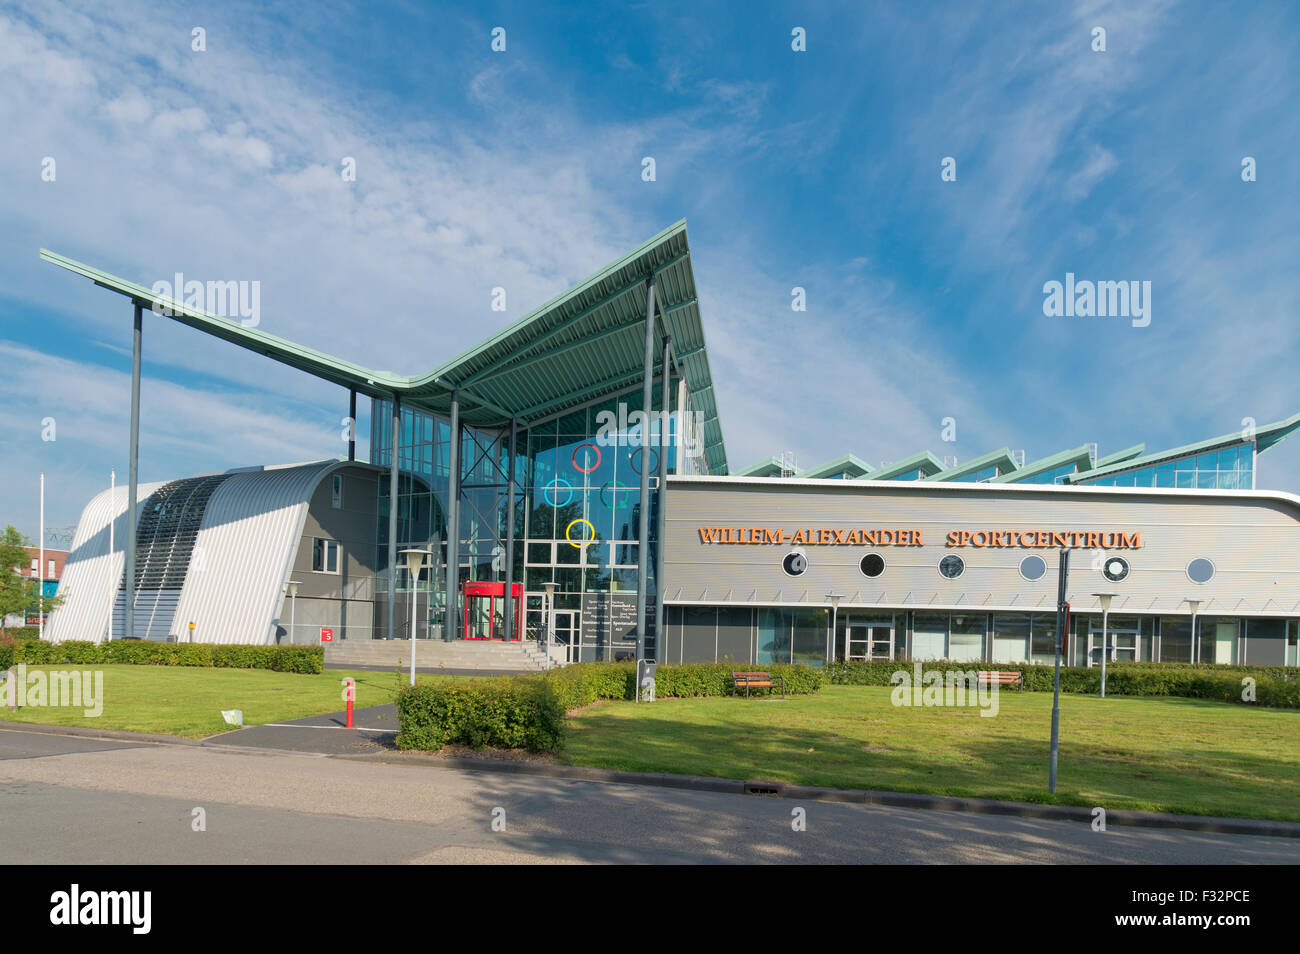 GRONINGEN, Niederlande - 22. August 2015: Willem-Alexander Sport Center außen von der Universität Groningen. Stockfoto